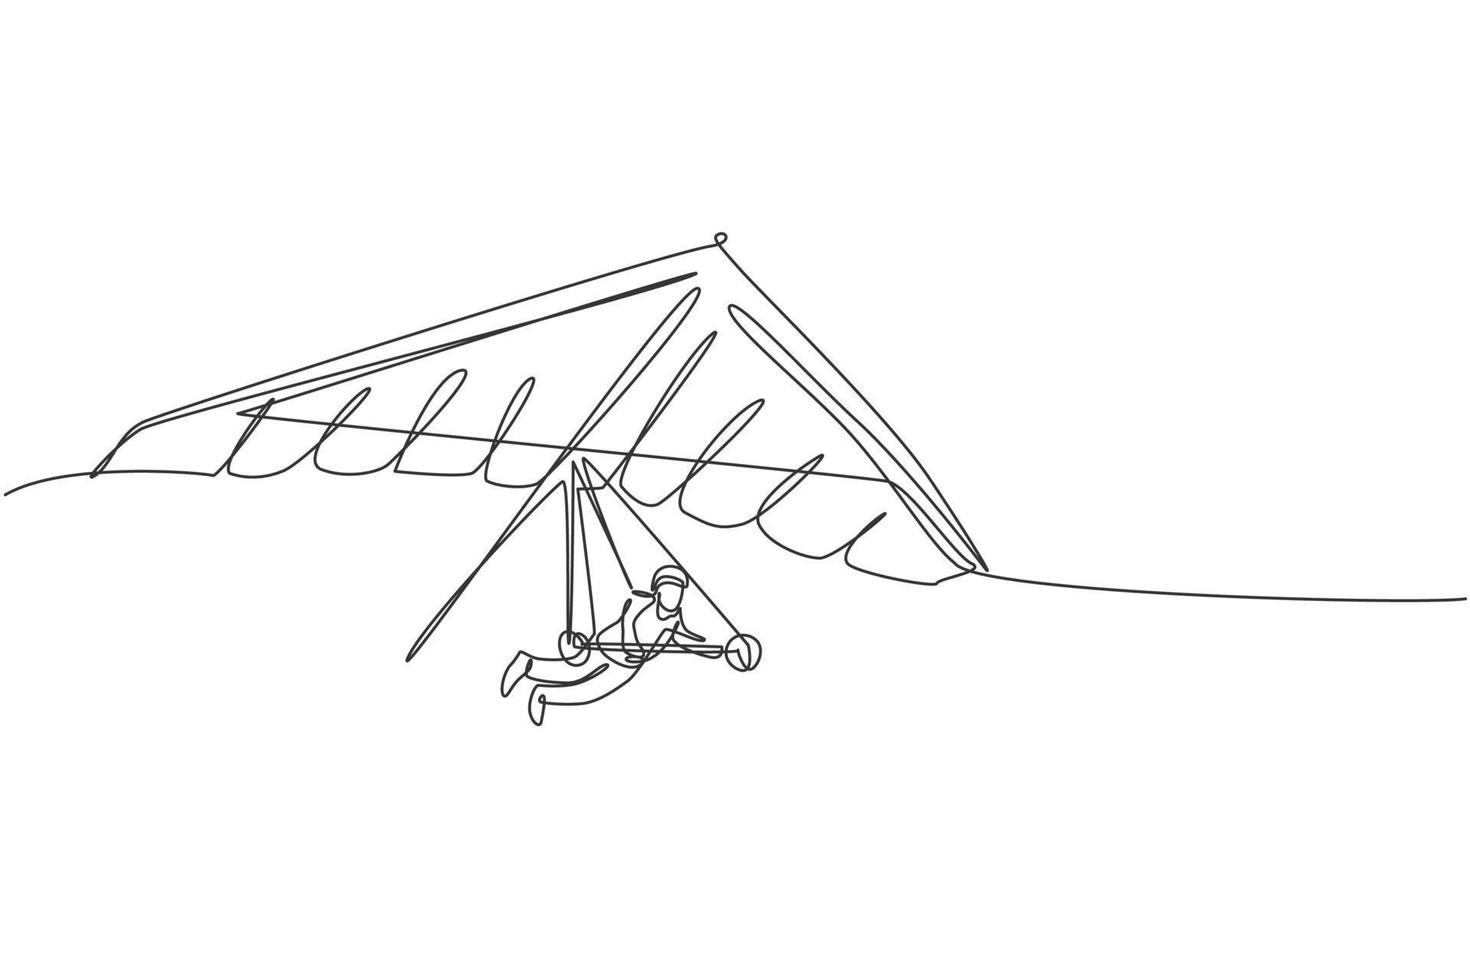 un disegno a linea singola di un giovane sportivo che vola con il deltaplano paracadute sull'illustrazione grafica vettoriale del cielo. concetto di sport estremo. moderno disegno a linea continua